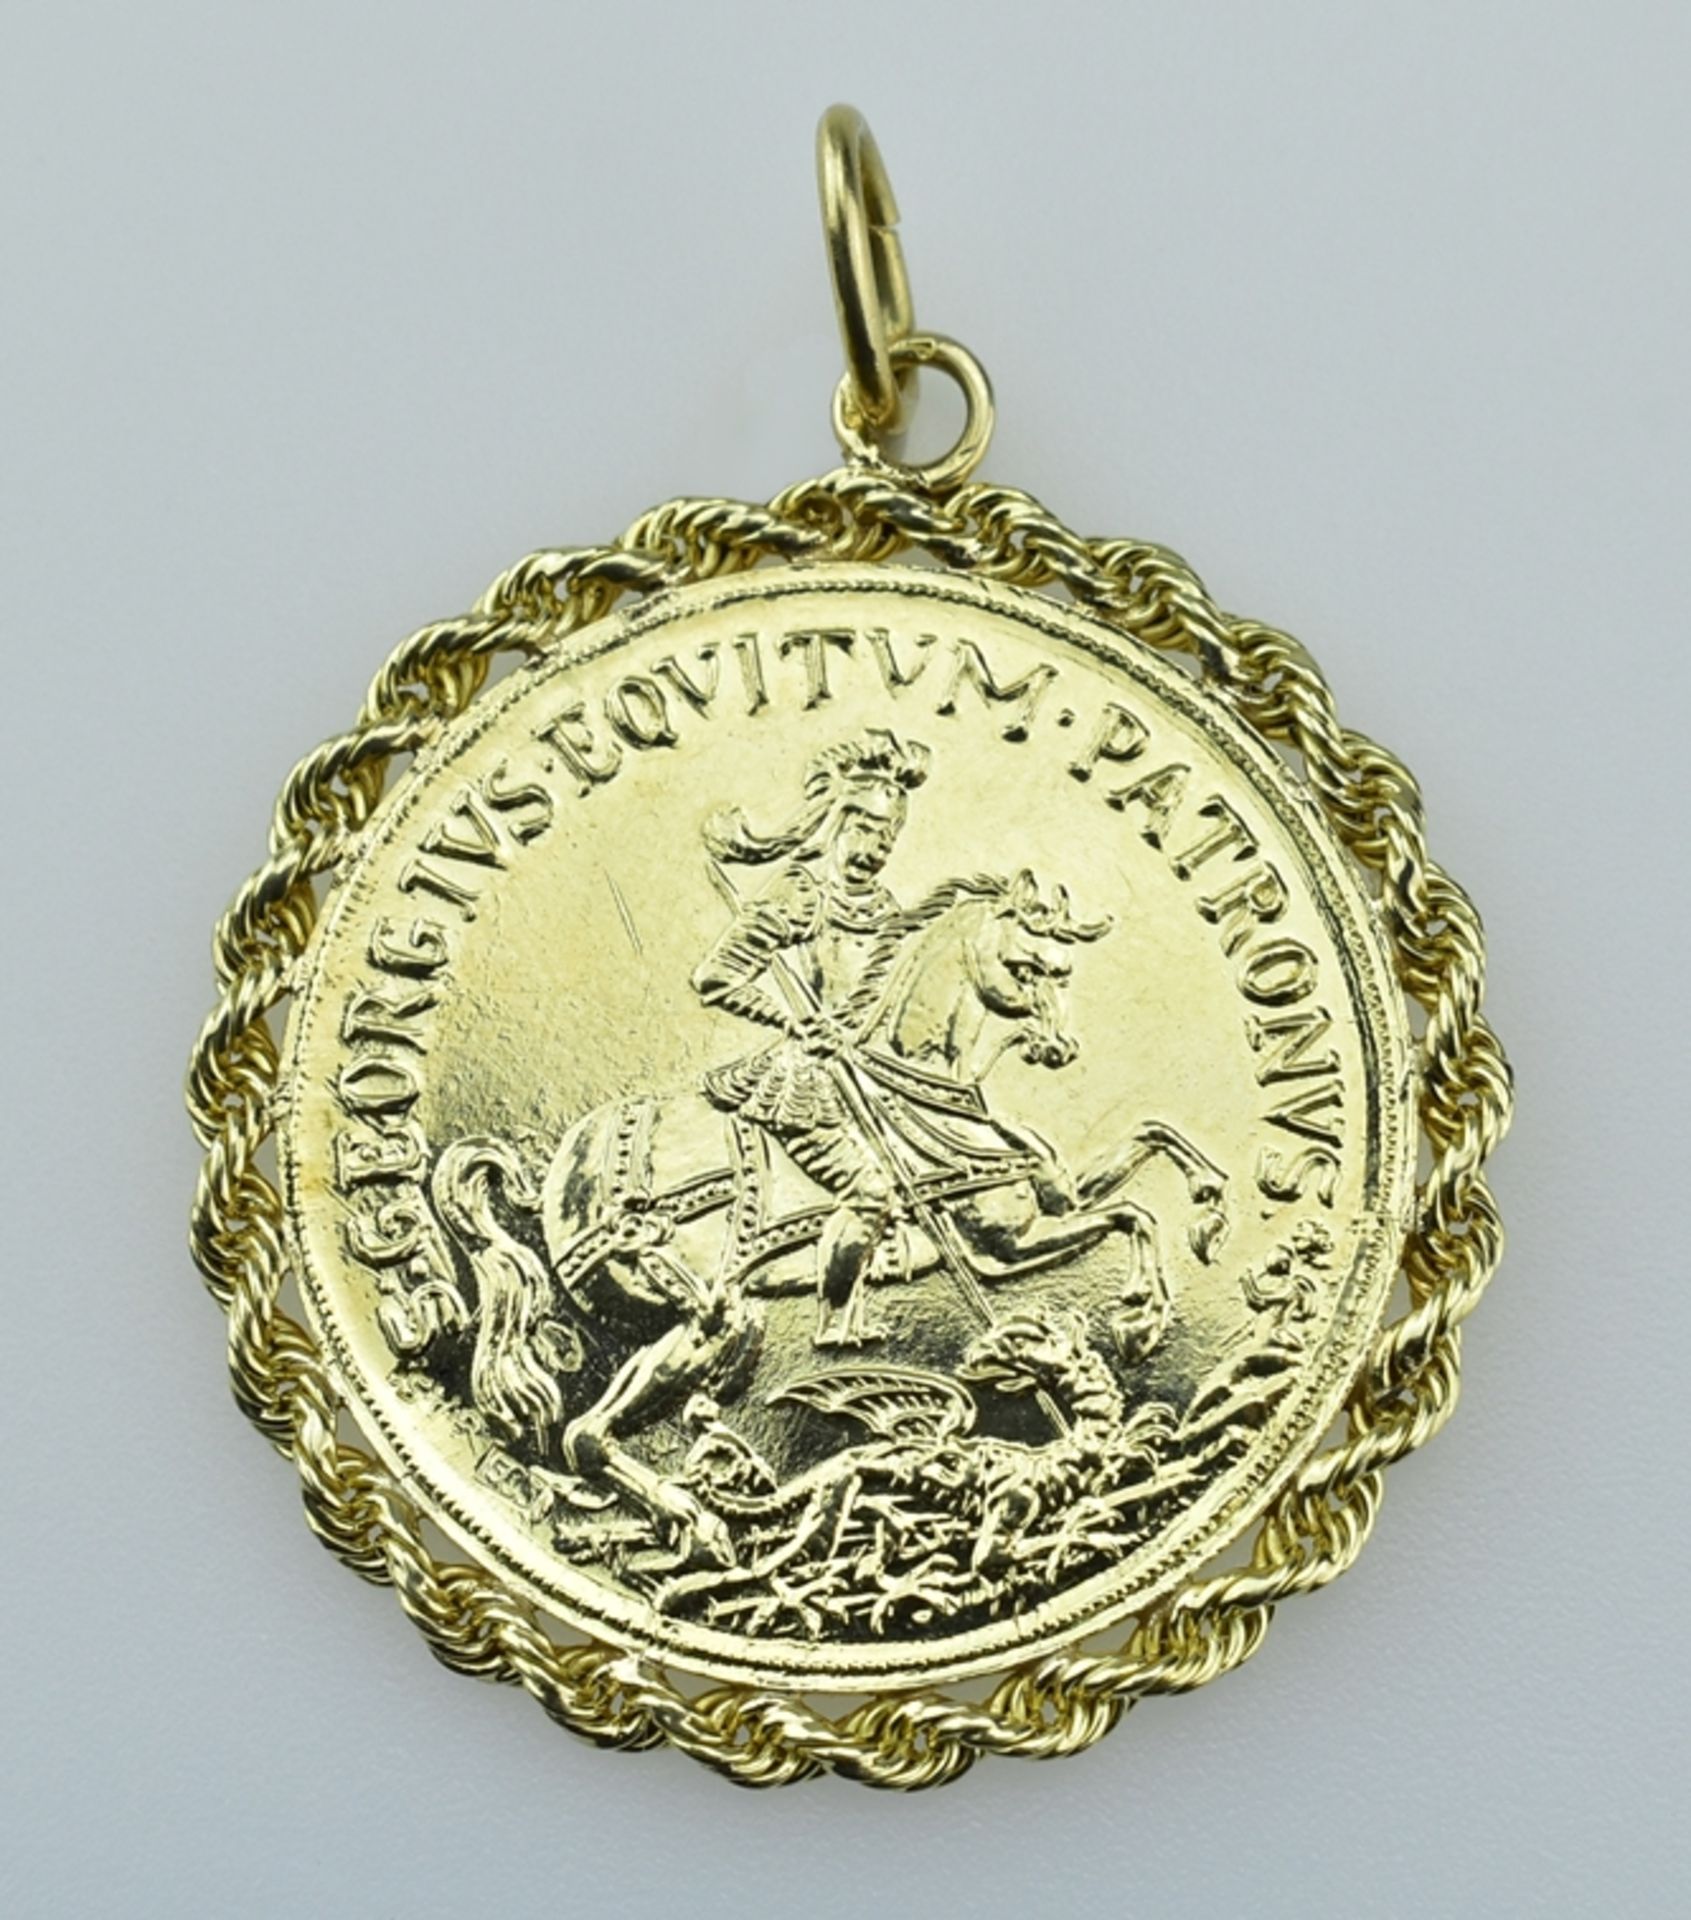 St. Georg-Anhänger.  Medaille mit Hl. Georg zu Pferd. Verso Schrift:'In Tempestate Securitas'. Kord